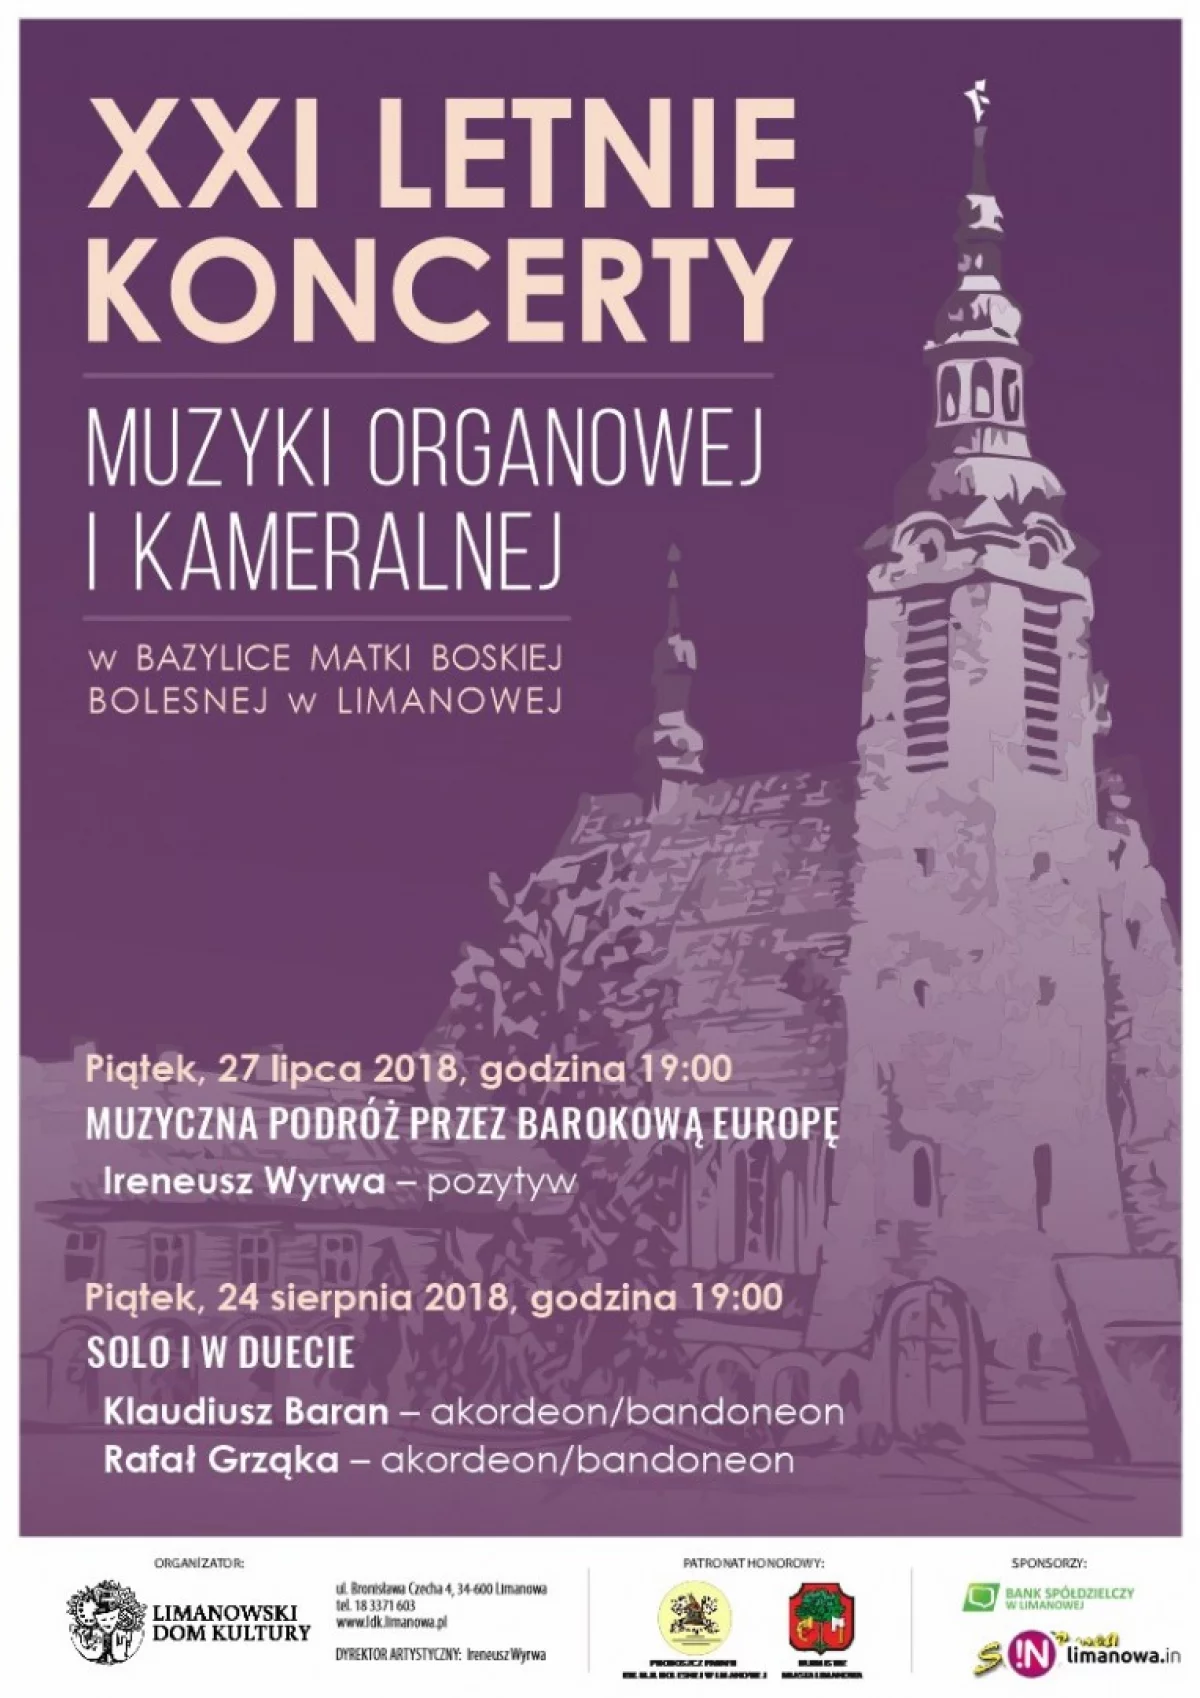 'Muzyczna podróż przez barokową Europę' - już dziś pierwszy koncert w Bazylice!